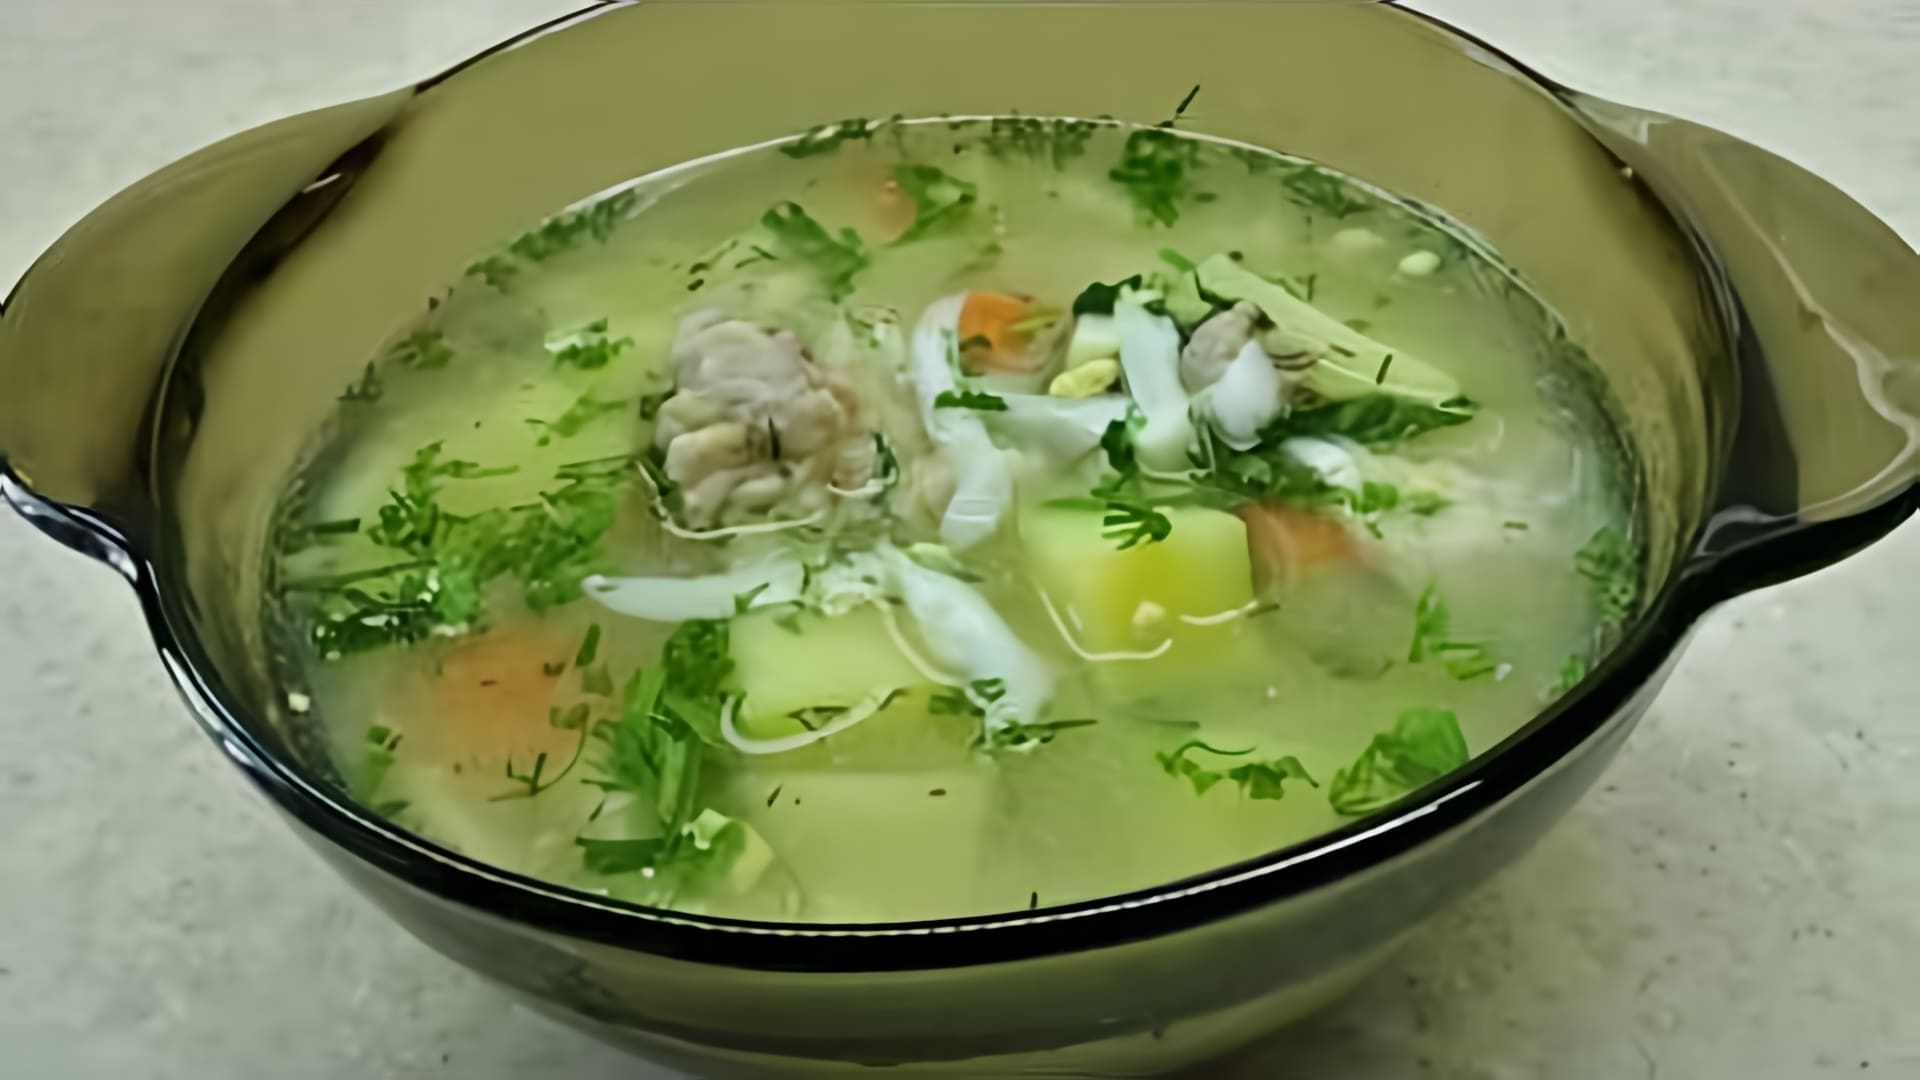 В этом видео демонстрируется процесс приготовления рыбного супа из головы толстолобика